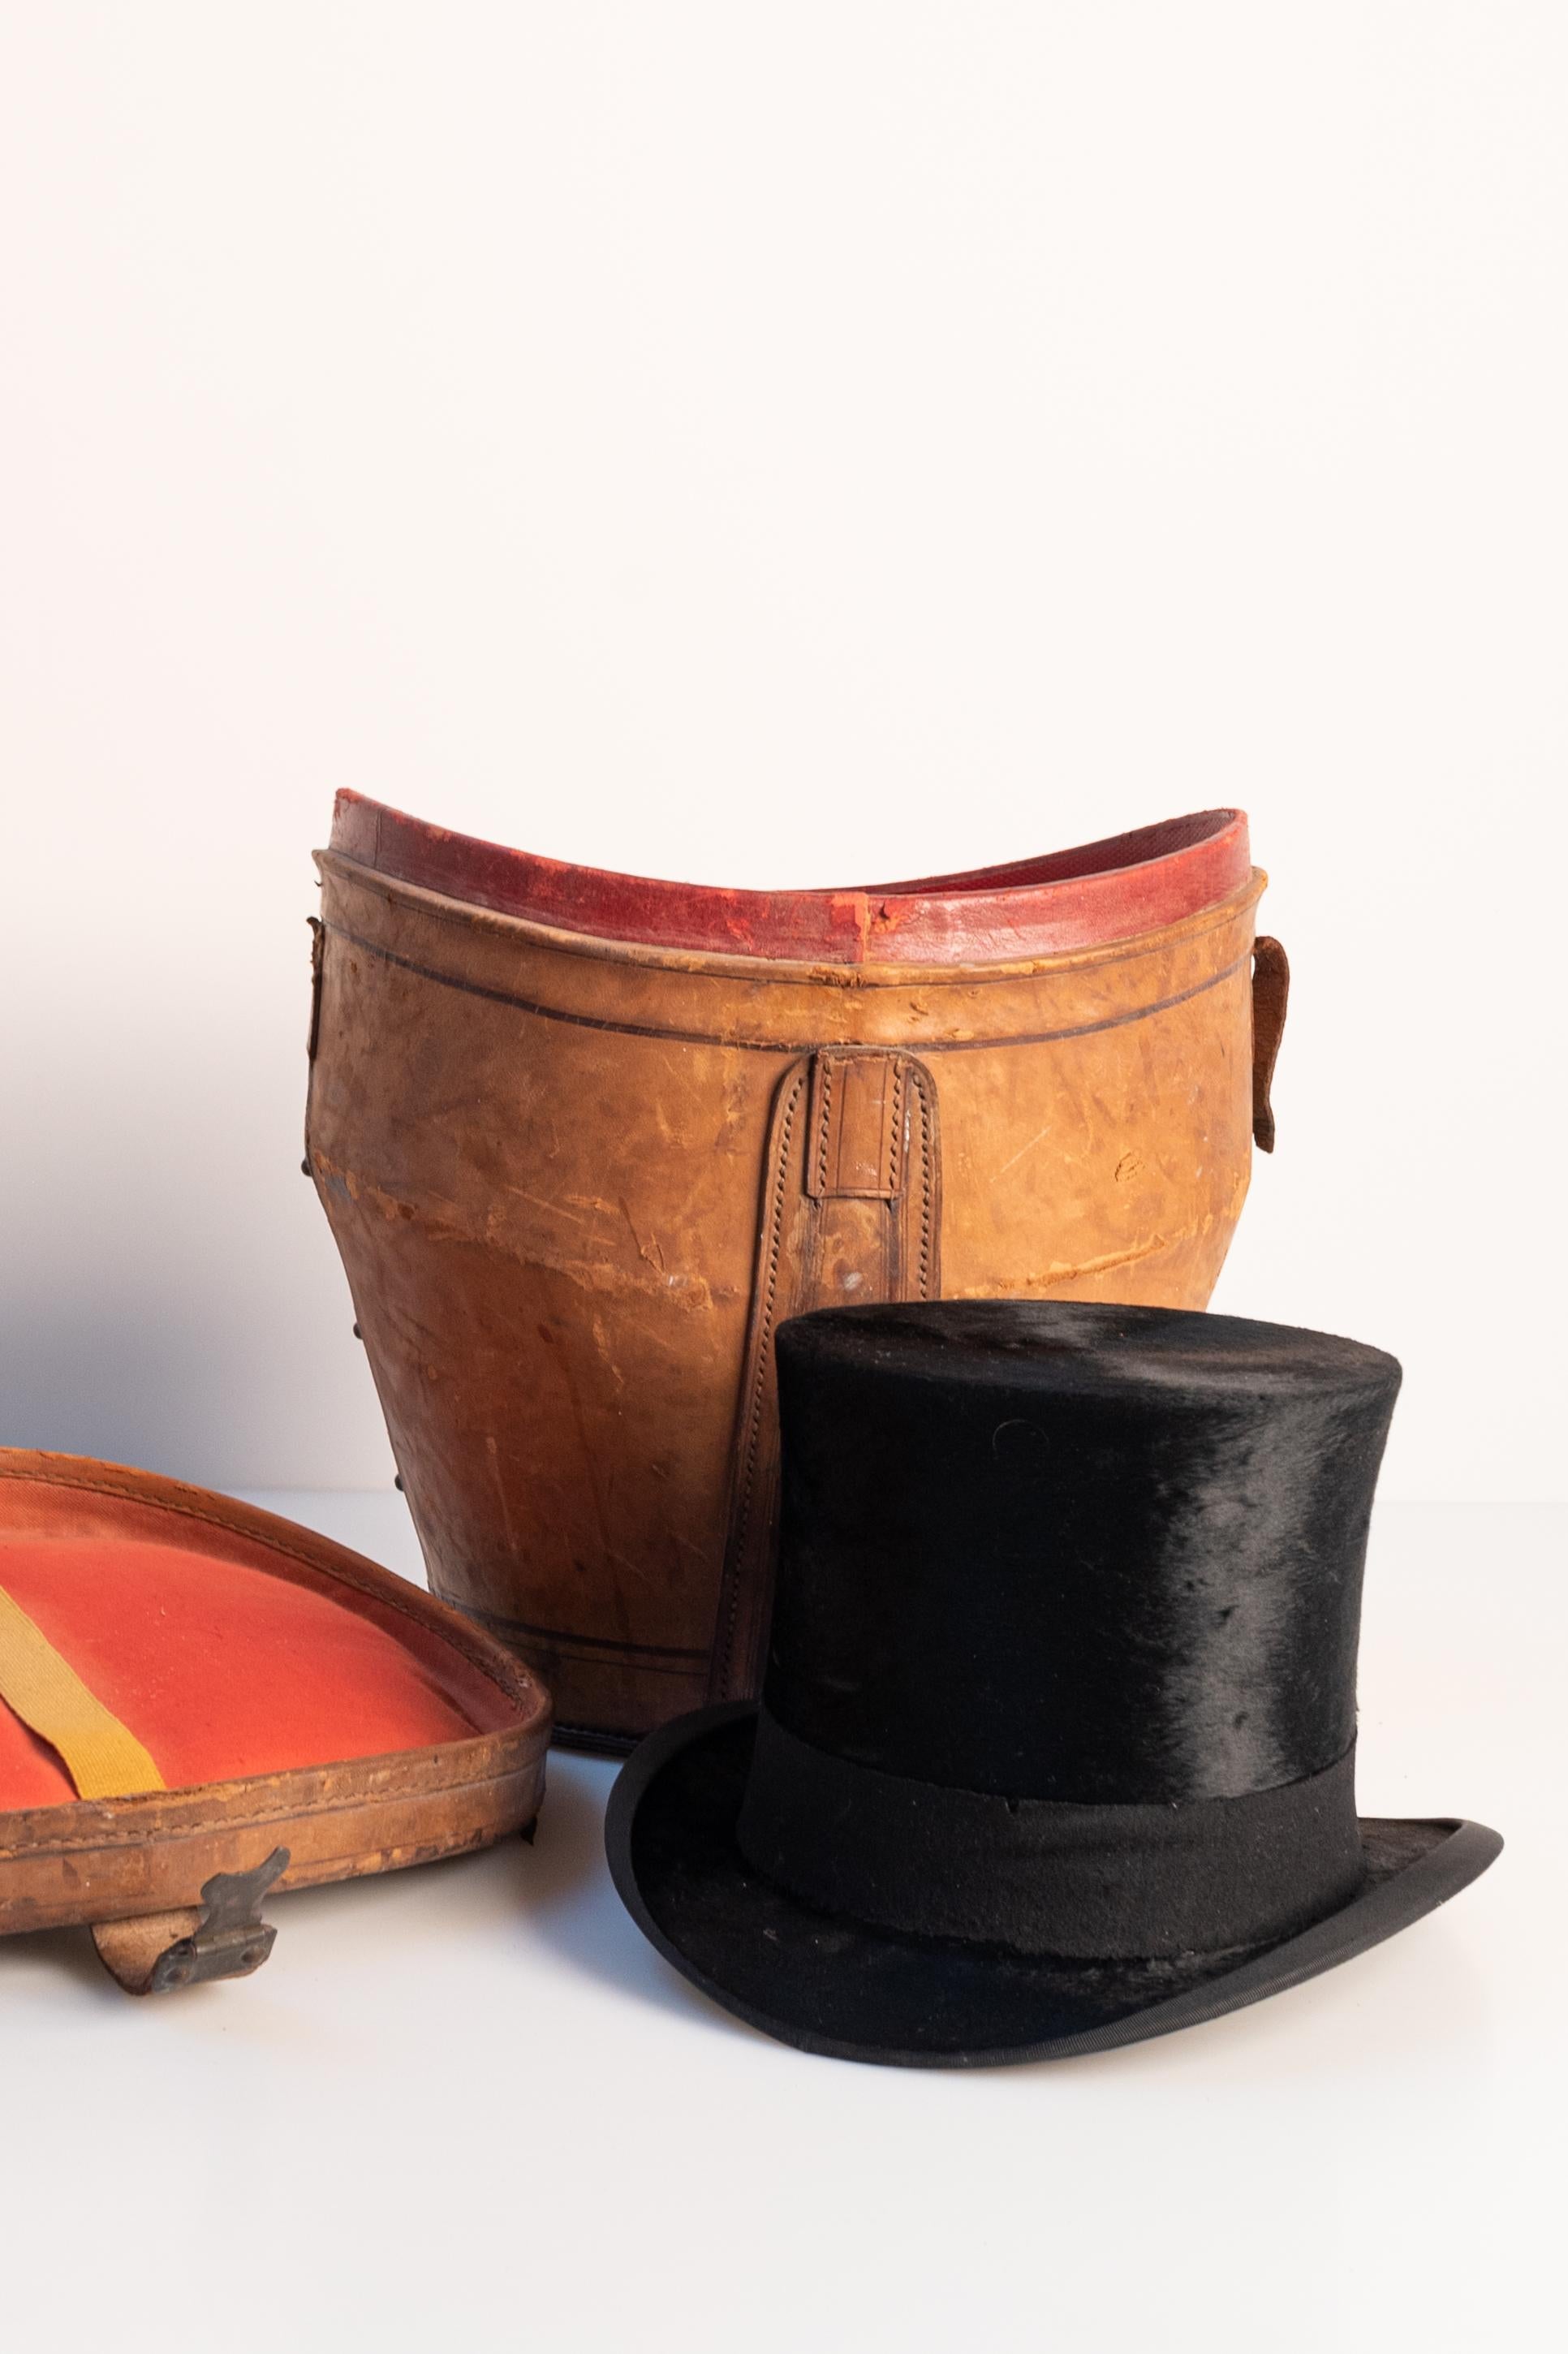 Chapeau haut de forme en moleskine, avec boîte à chapeau en cuir (fin 19e - début 20e siècle). Le chapeau a été fabriqué par Berteil Paris (France),  une maison établie depuis 1840. 

Dimensions : 
Le chapeau, y compris le bord, mesure 25 cm de